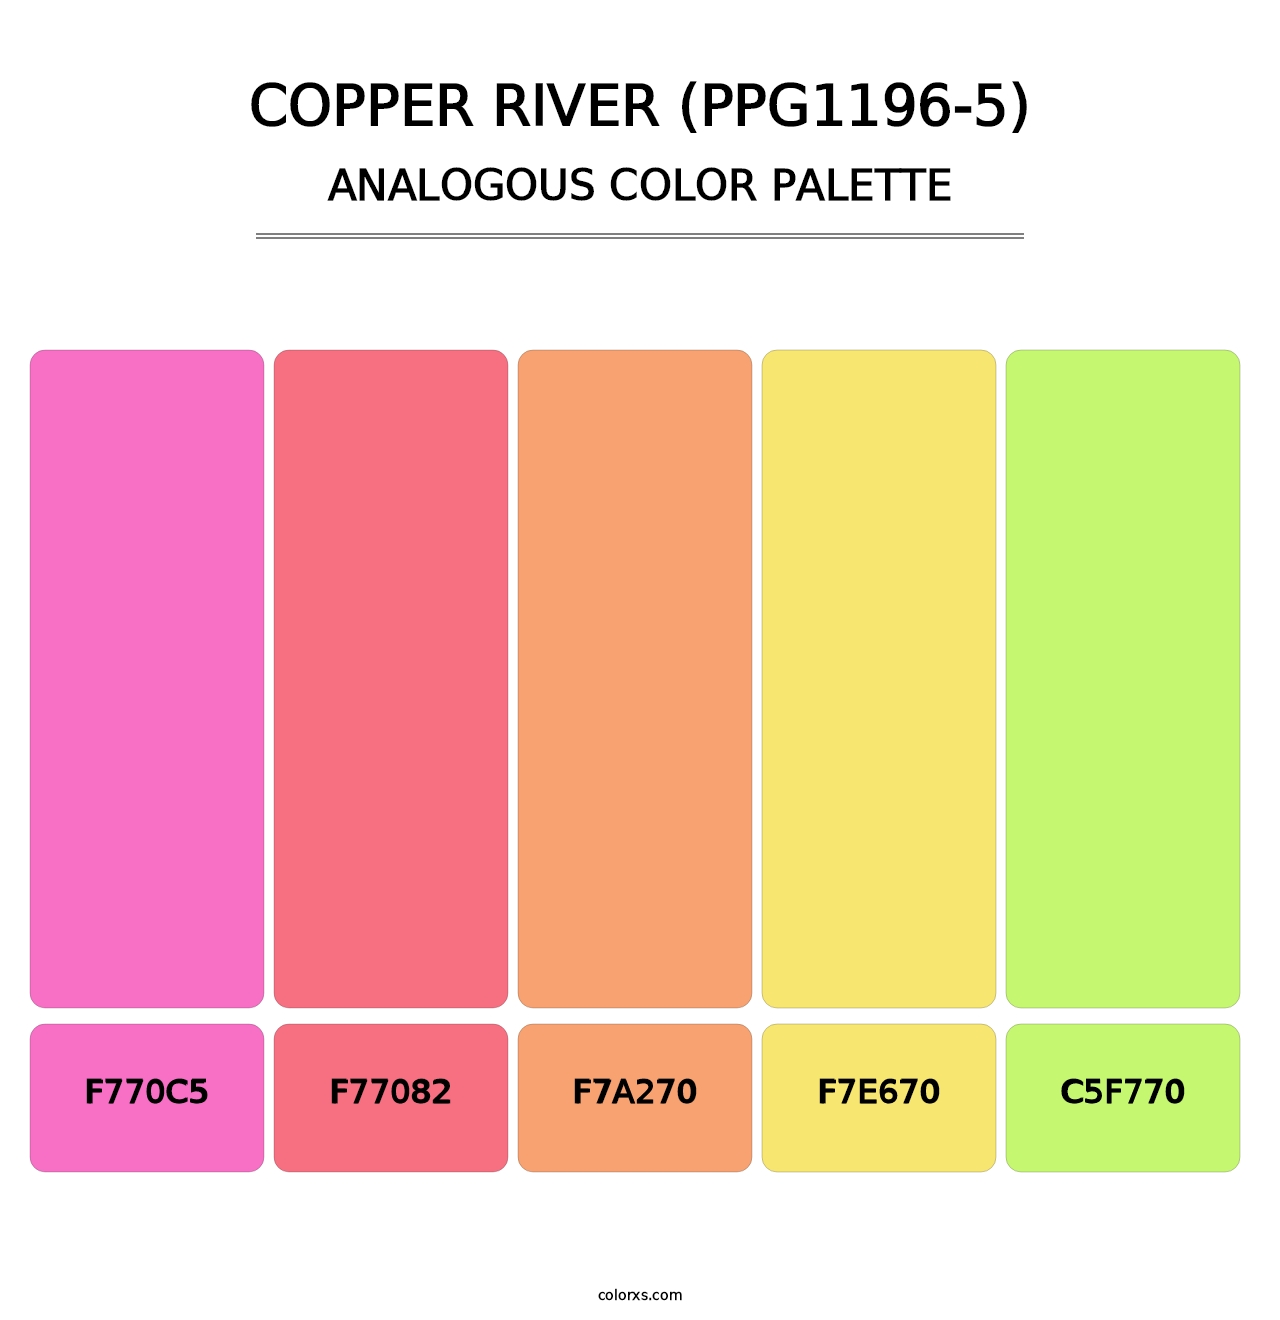 Copper River (PPG1196-5) - Analogous Color Palette